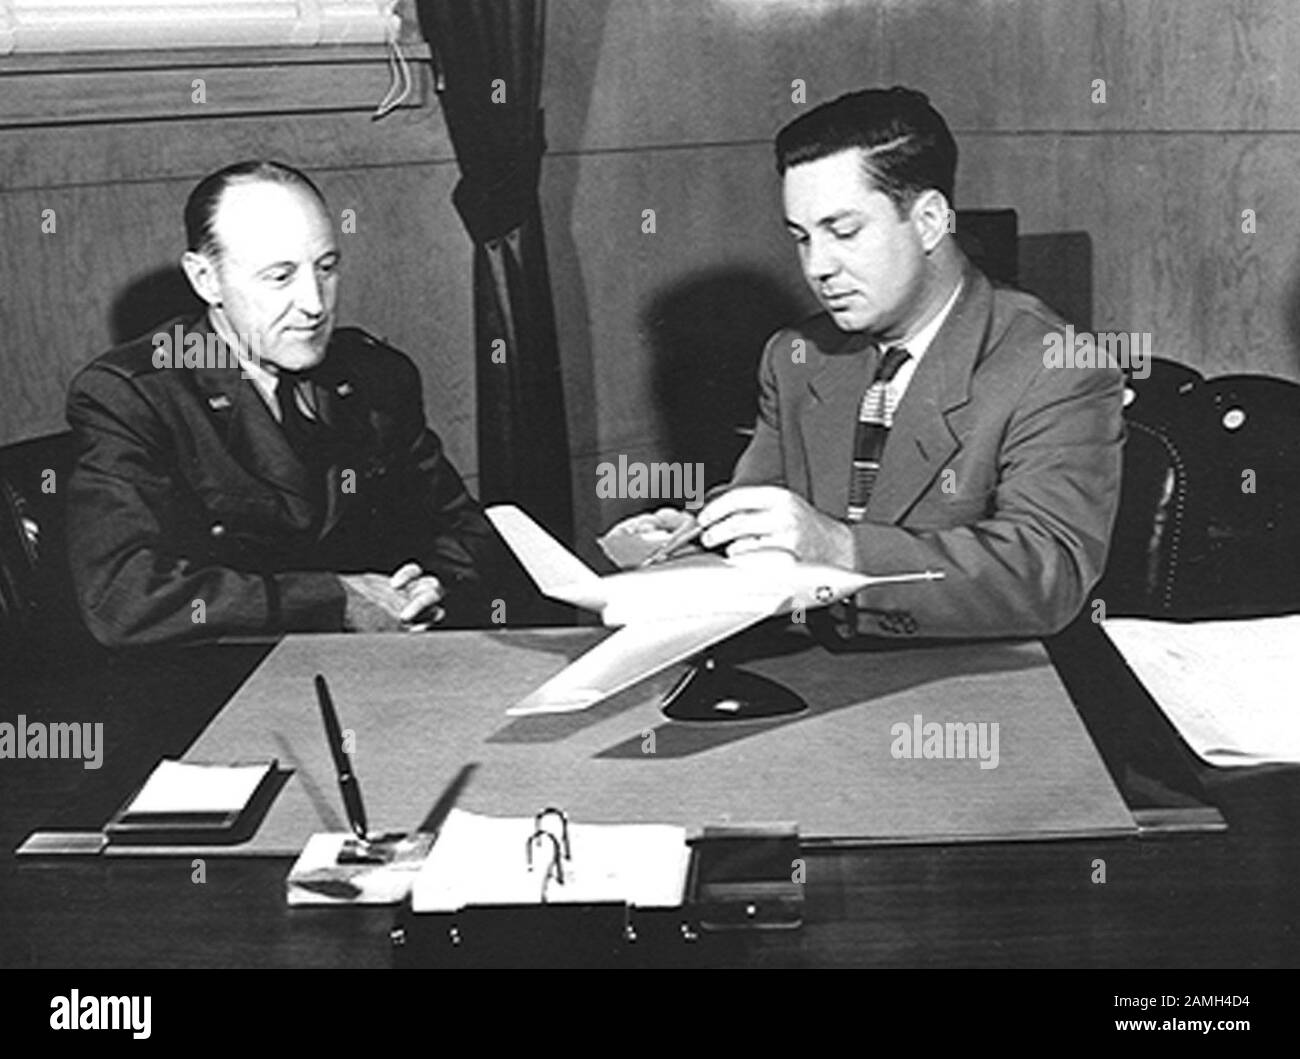 Foto von Walter C. Williams, Leiter der NACA-Gruppe auf der Edwards AFB, und Albert G. Boyd, Commanding General von Edwards AFB, Untersuchung eines Modells der Northrop X-4 Bantam Aircraft, 1950. Bild mit freundlicher Genehmigung der NASA. () Stockfoto